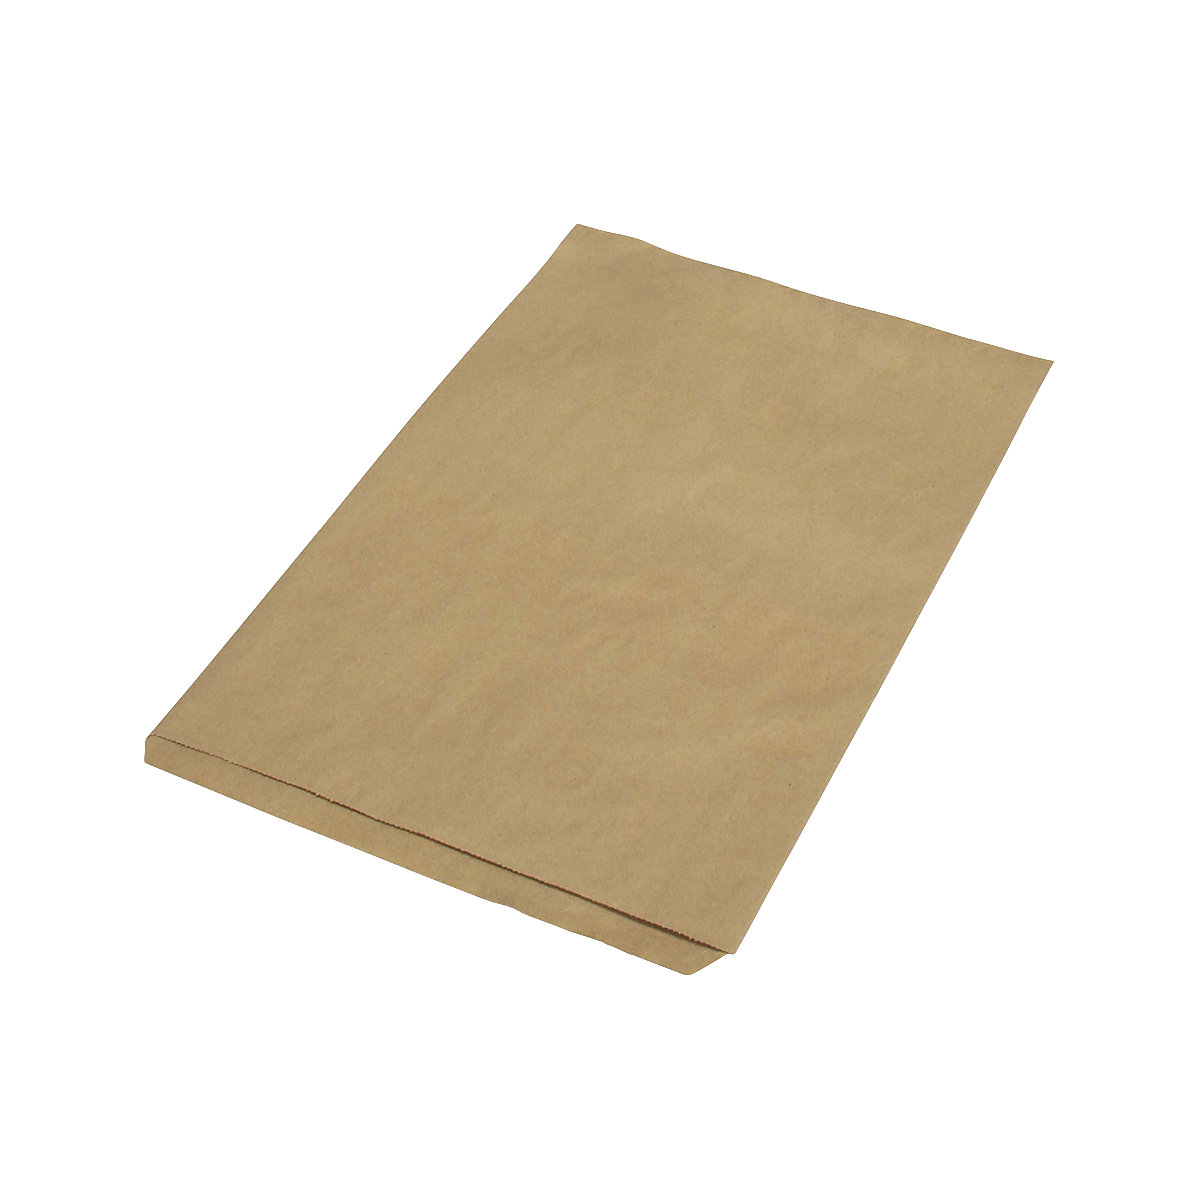 Sacchetti piatti – terra, in carta riciclata, lungh. x largh. 350 x 230 mm, conf. da 1000 pz., a partire da 5 conf.-1